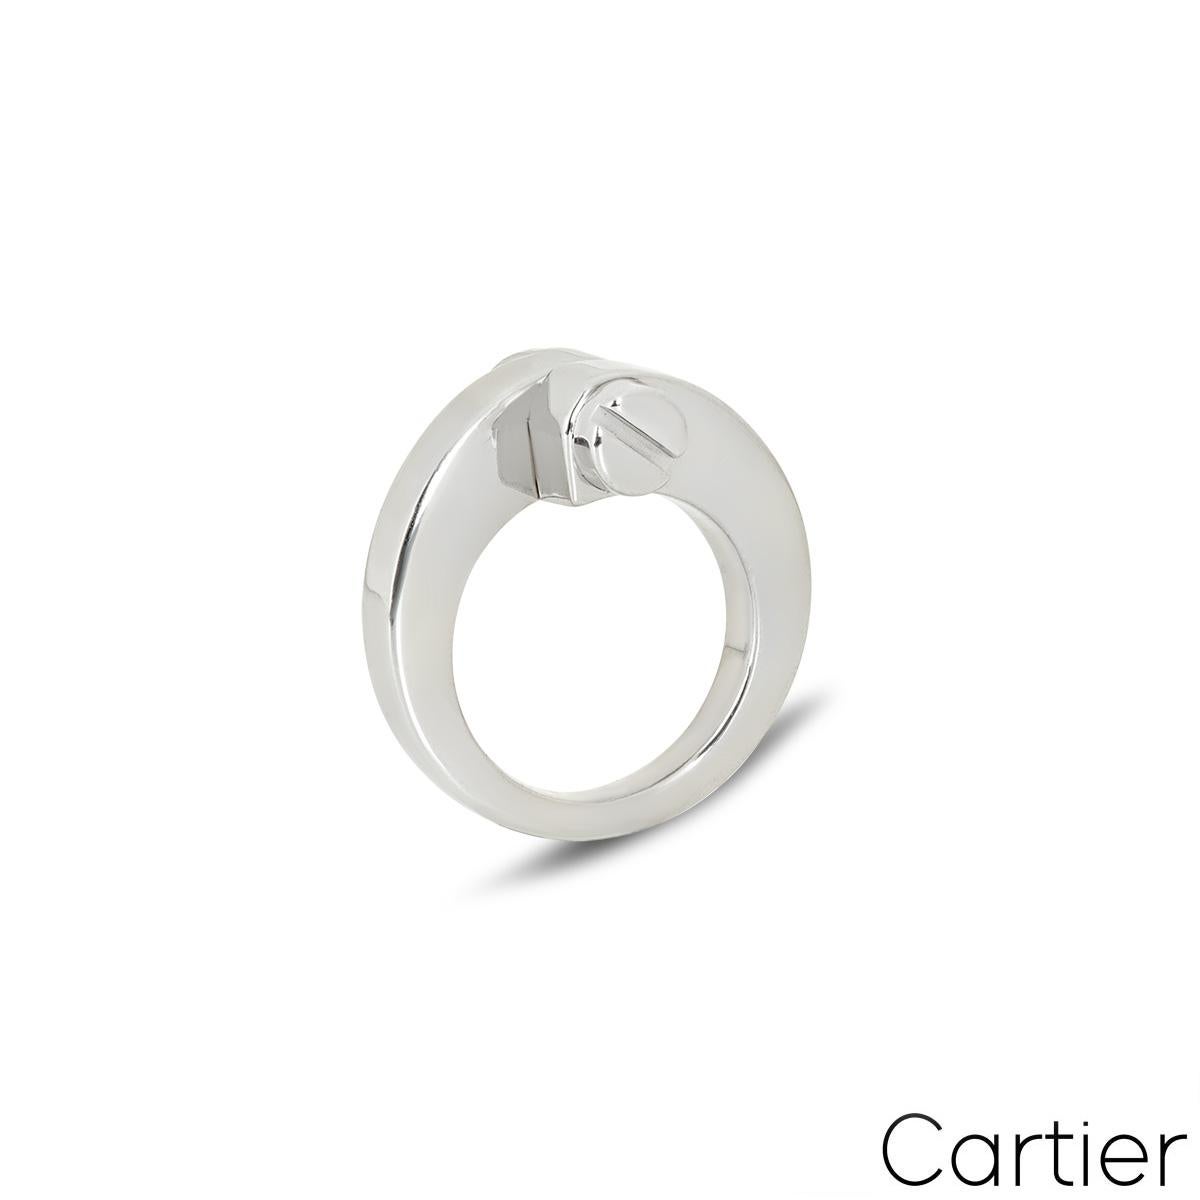 Ein trendiger Ring aus 18 Karat Weißgold von Cartier aus der Collection'S Menotte. In der Mitte des Rings befinden sich zwei schraubenförmige Abschlüsse. Der Ring verjüngt sich von 11 mm auf 3 mm, entspricht der britischen Größe I, der US-Größe